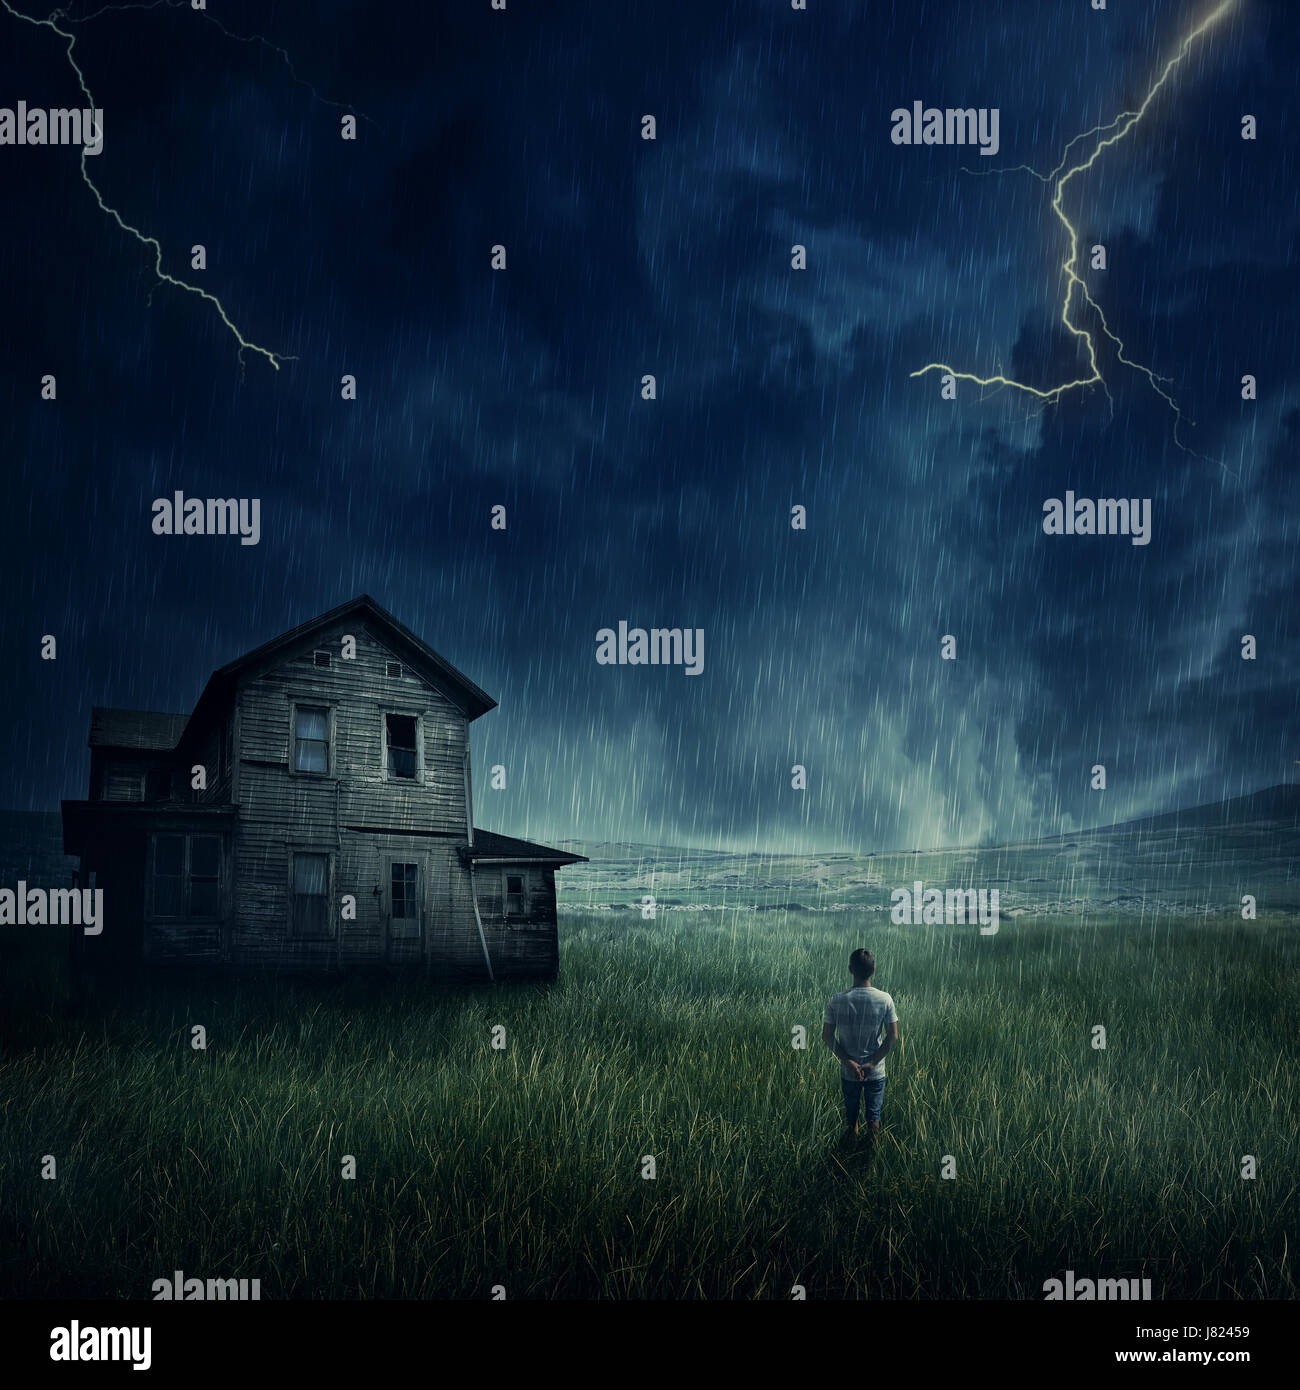 Paysage fantasmagorique comme un jeune garçon marche dans la prairie d'oeil à un ghost, Haunted House ci-dessous un sombre ciel d'orage. Banque D'Images